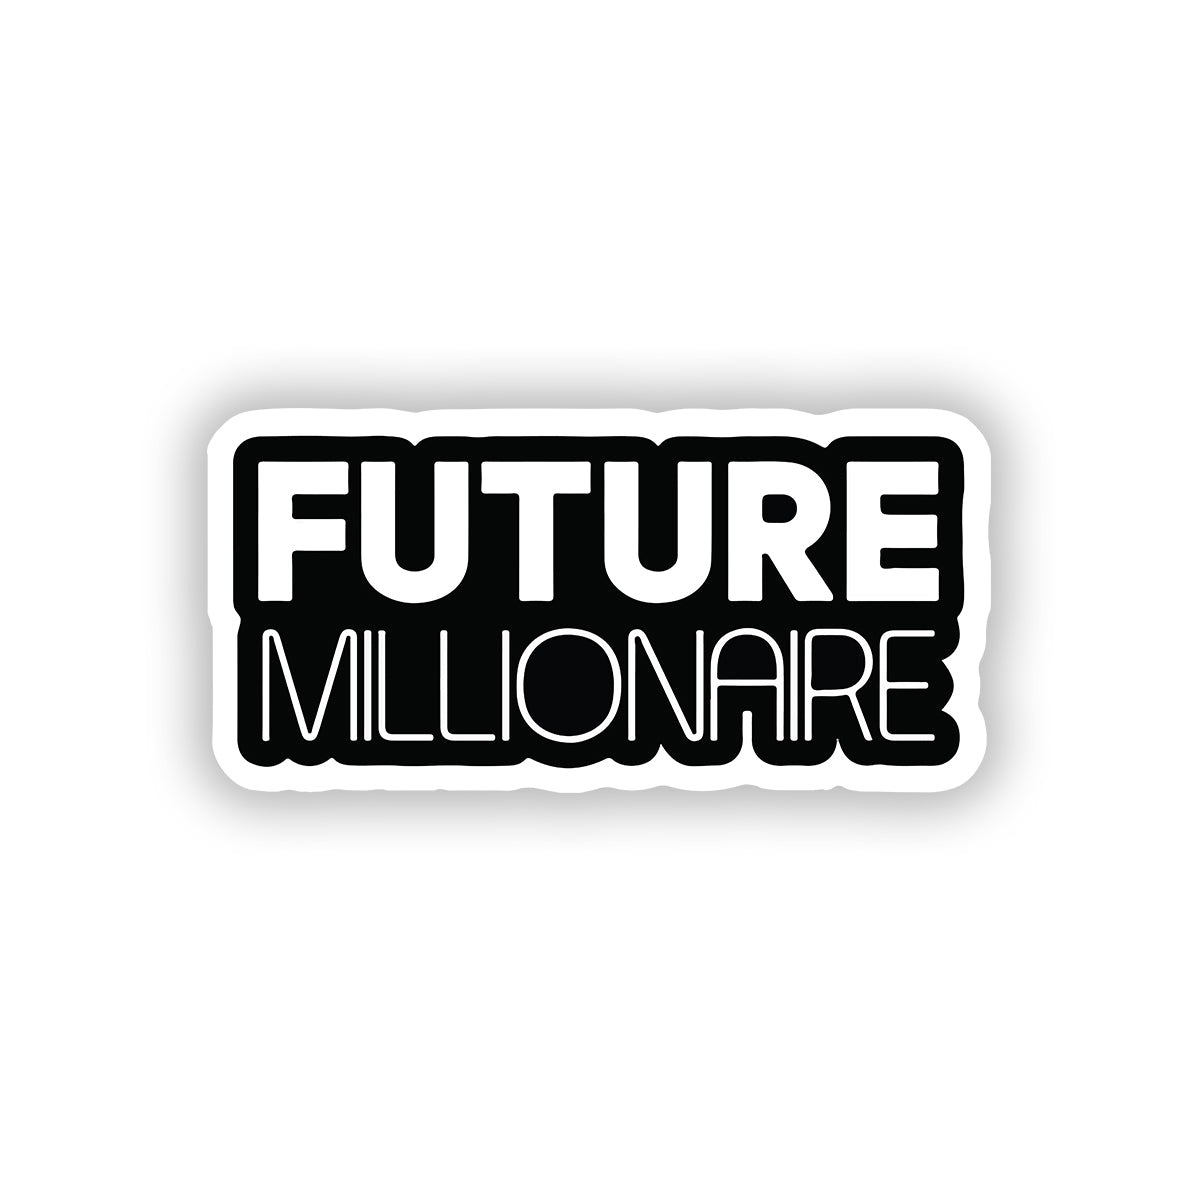 Future millionaire